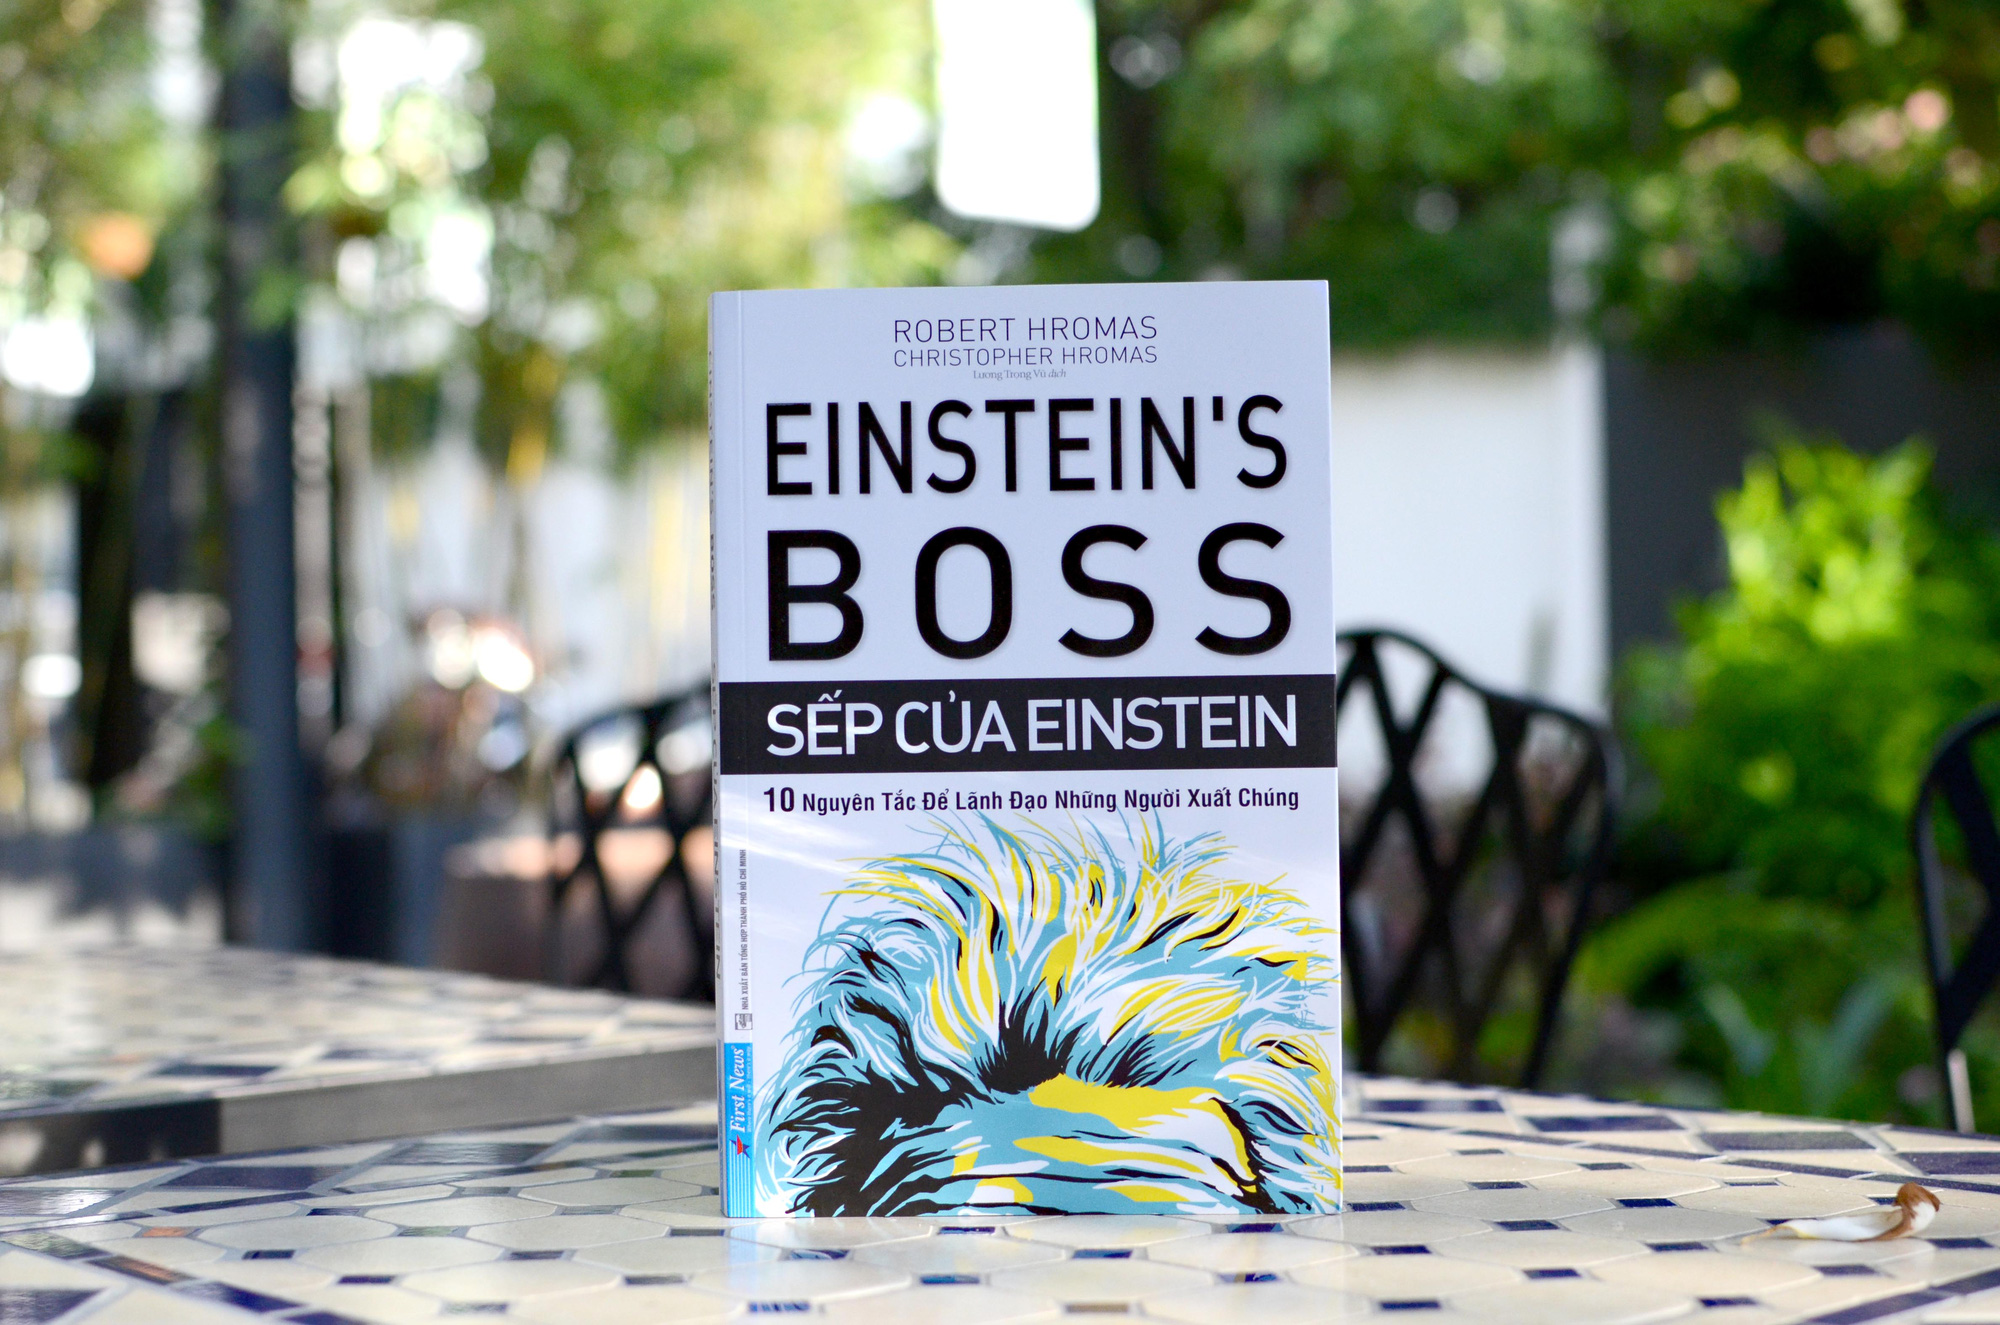 Cuốn sách bày cách lãnh đạo những người xuất chúng giống như Einstein - Ảnh 1.